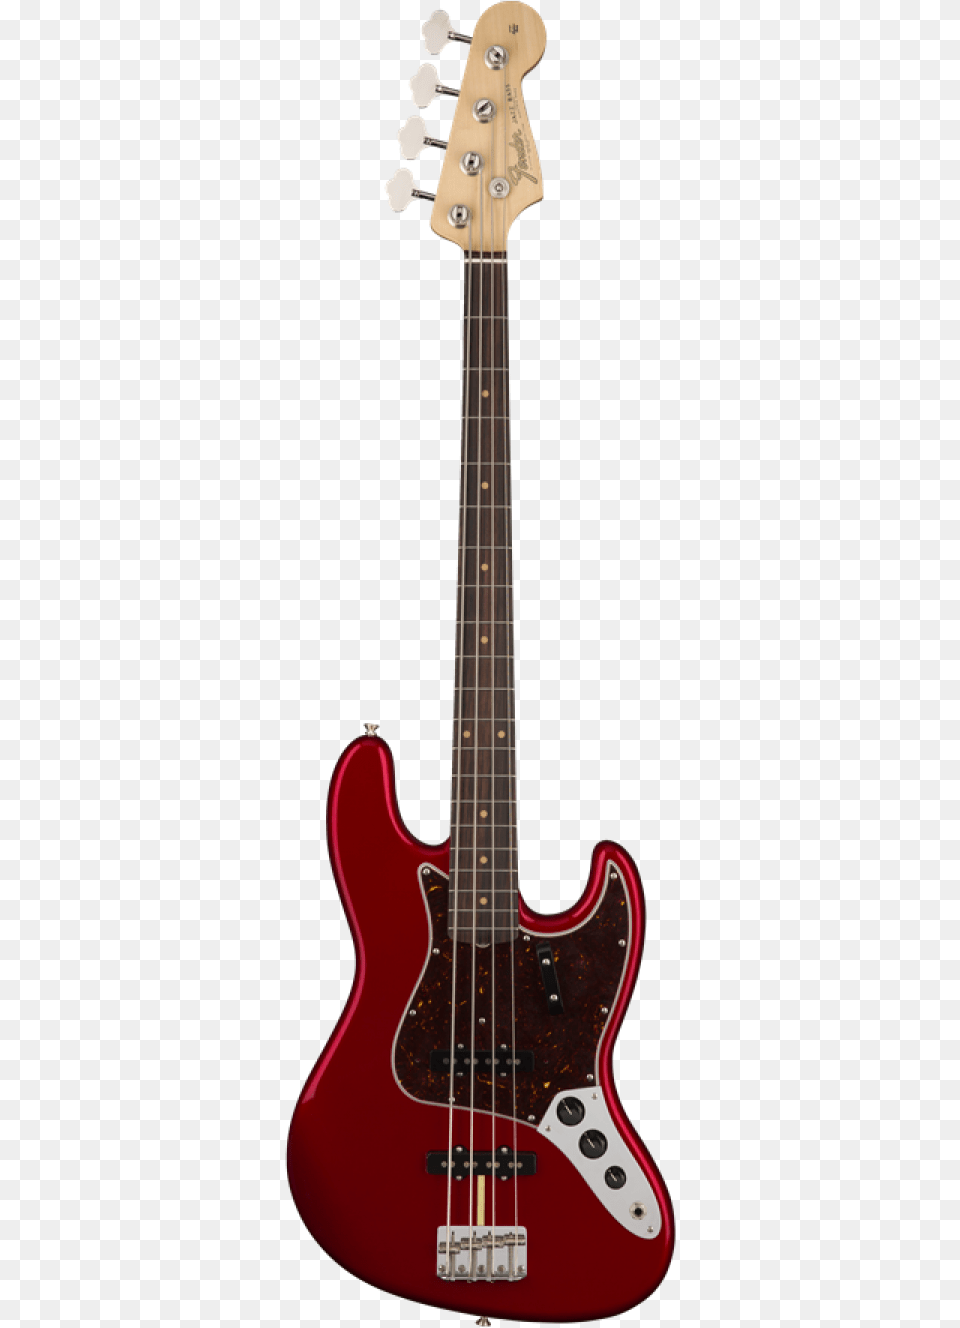 Fender American Original 60s Jazz Bass Rosewood Fingerboard Red Fender Jazz Bass, Bass Guitar, Guitar, Musical Instrument Free Transparent Png